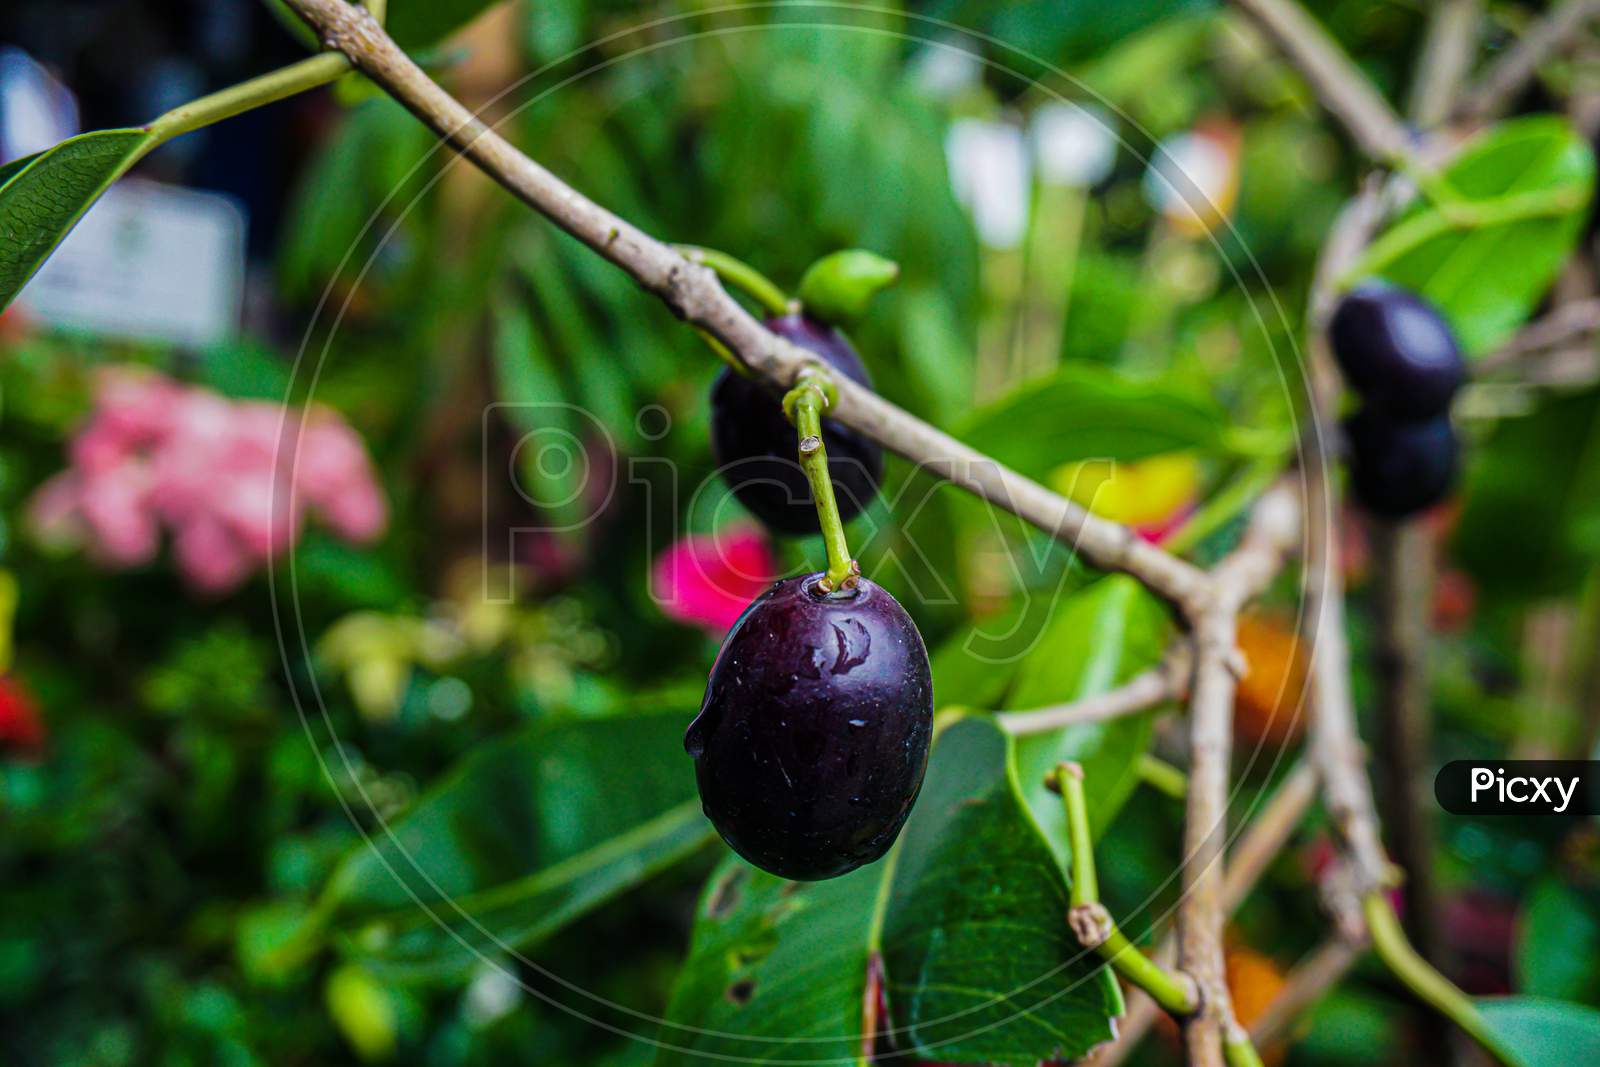 Jambolan Plum, Jamun Fruit, Syzygium Cumini, Black Plum, Java Plum, Black Berry Fruit.